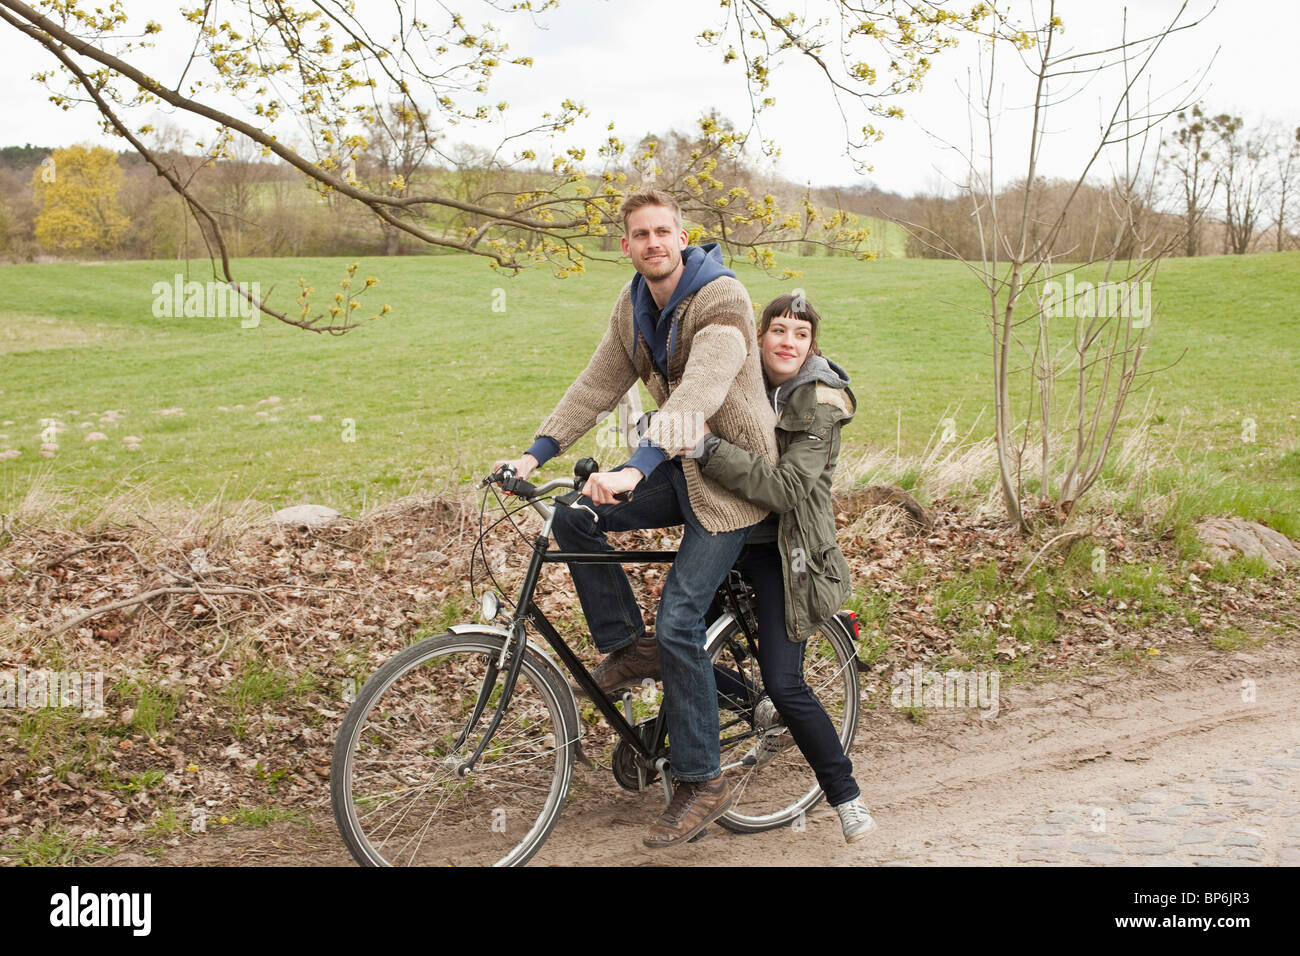 Un homme donnant à un tour à sa petite amie sur une bicyclette dans le pays Banque D'Images